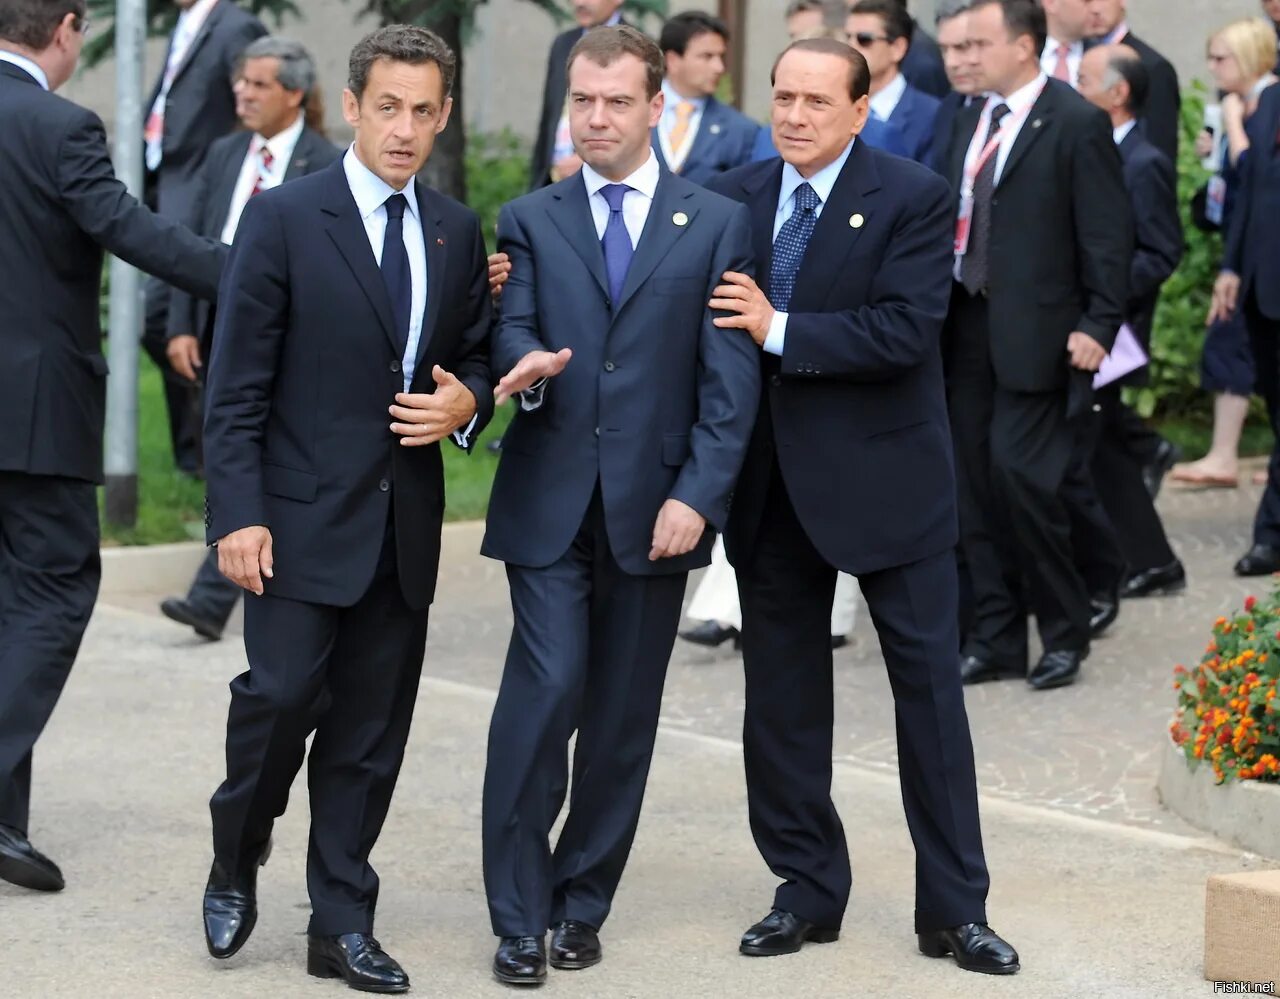 Где найти политиков. Медведев Берлускони Саркози. Берлускони 2010 g8 Summit. Саркози Медведев Берлускони Обама.